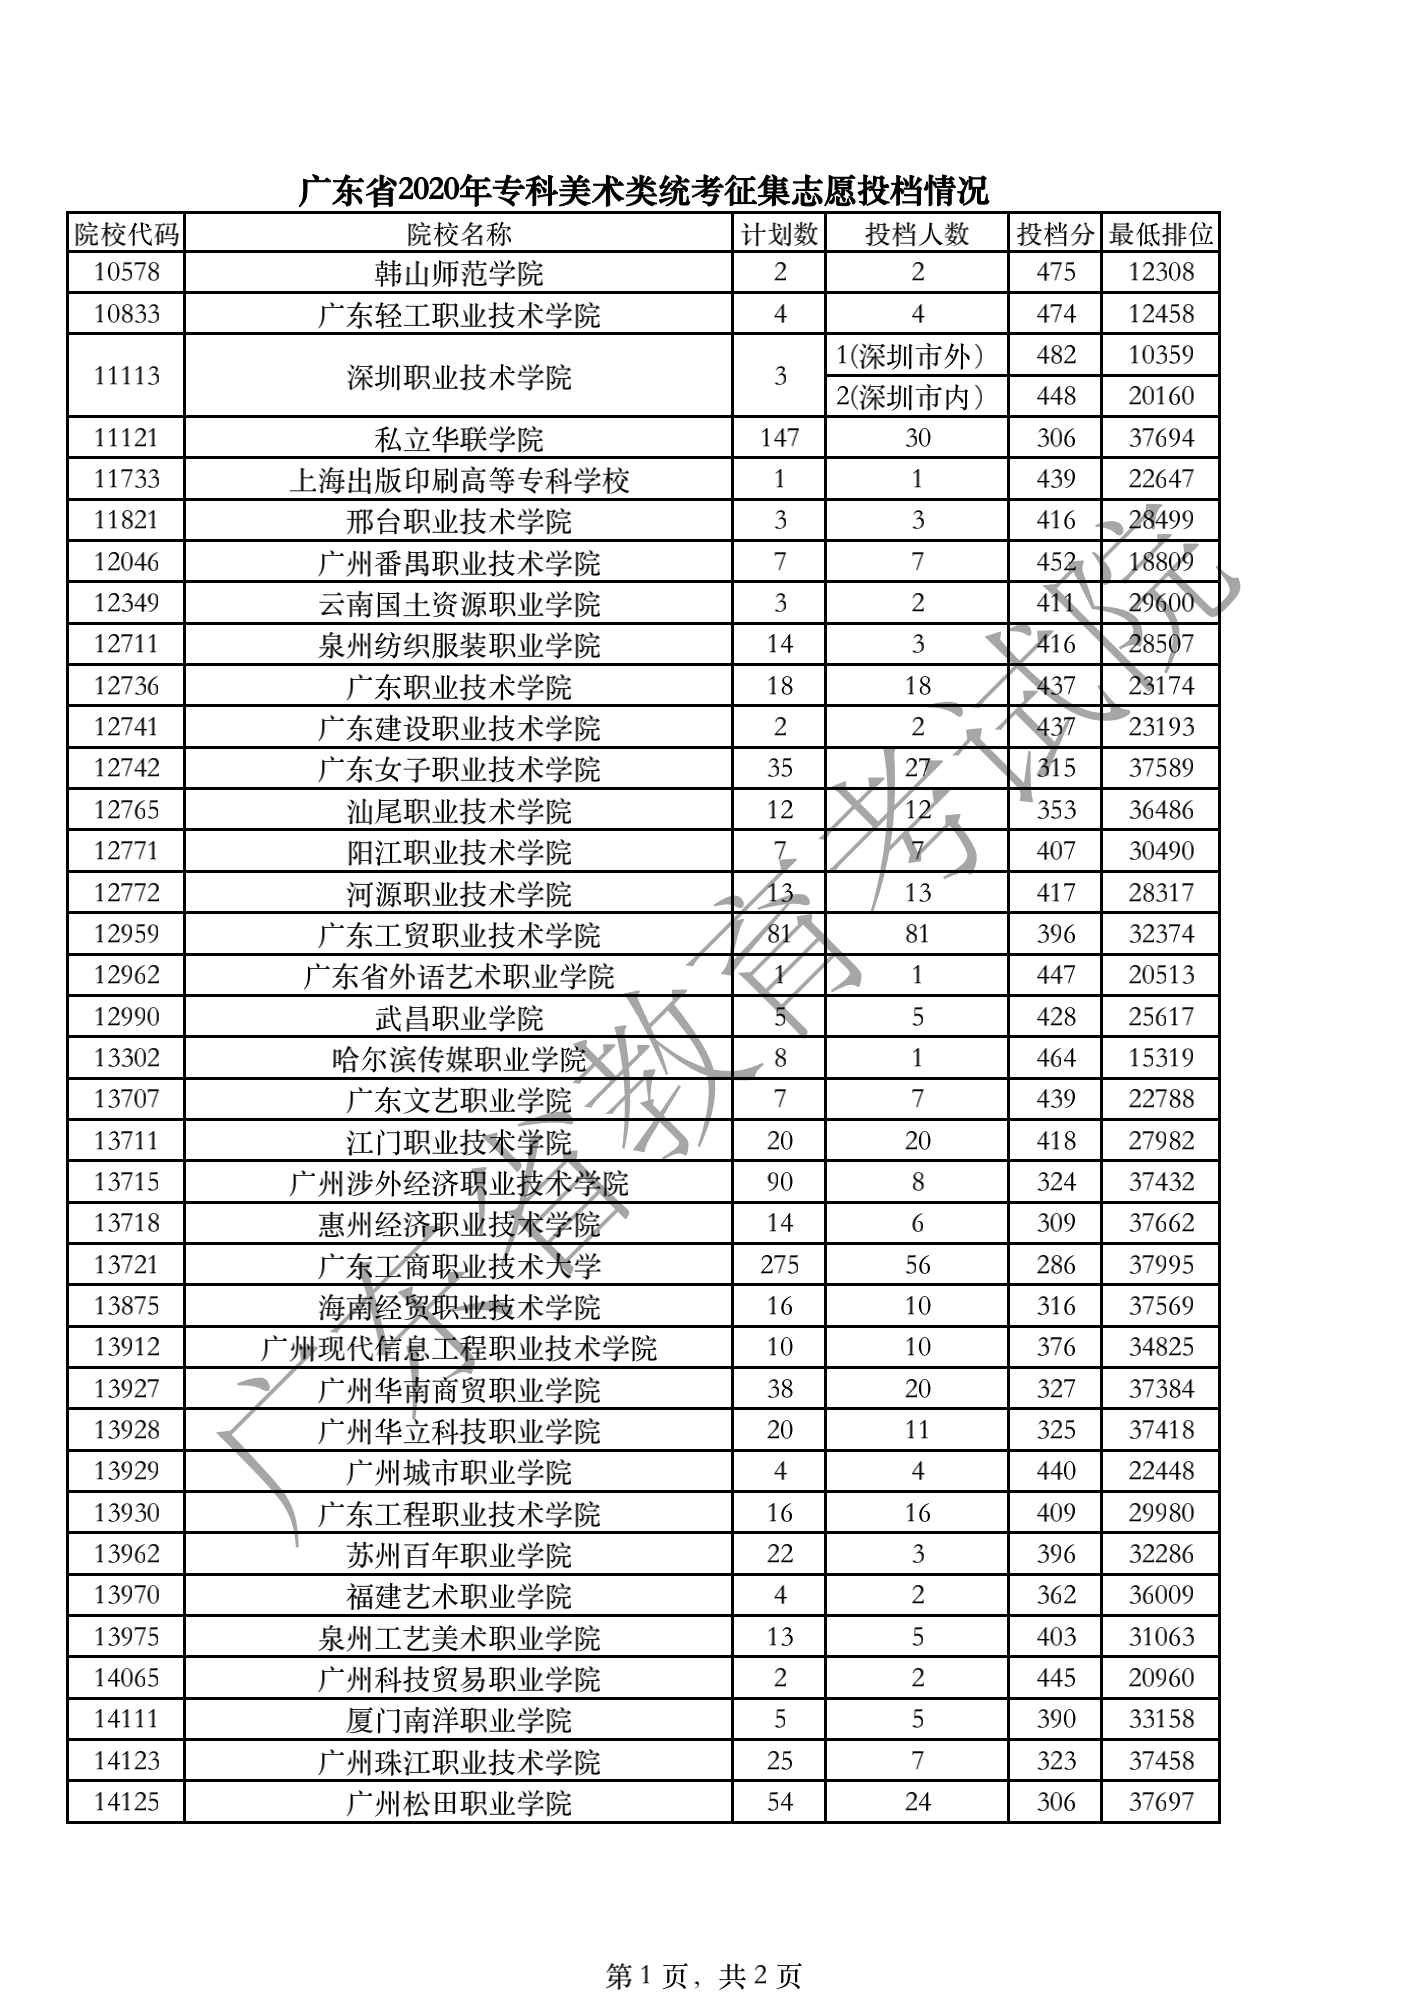 广东省2020年专科美术类统考征集志愿投档情况_00.png